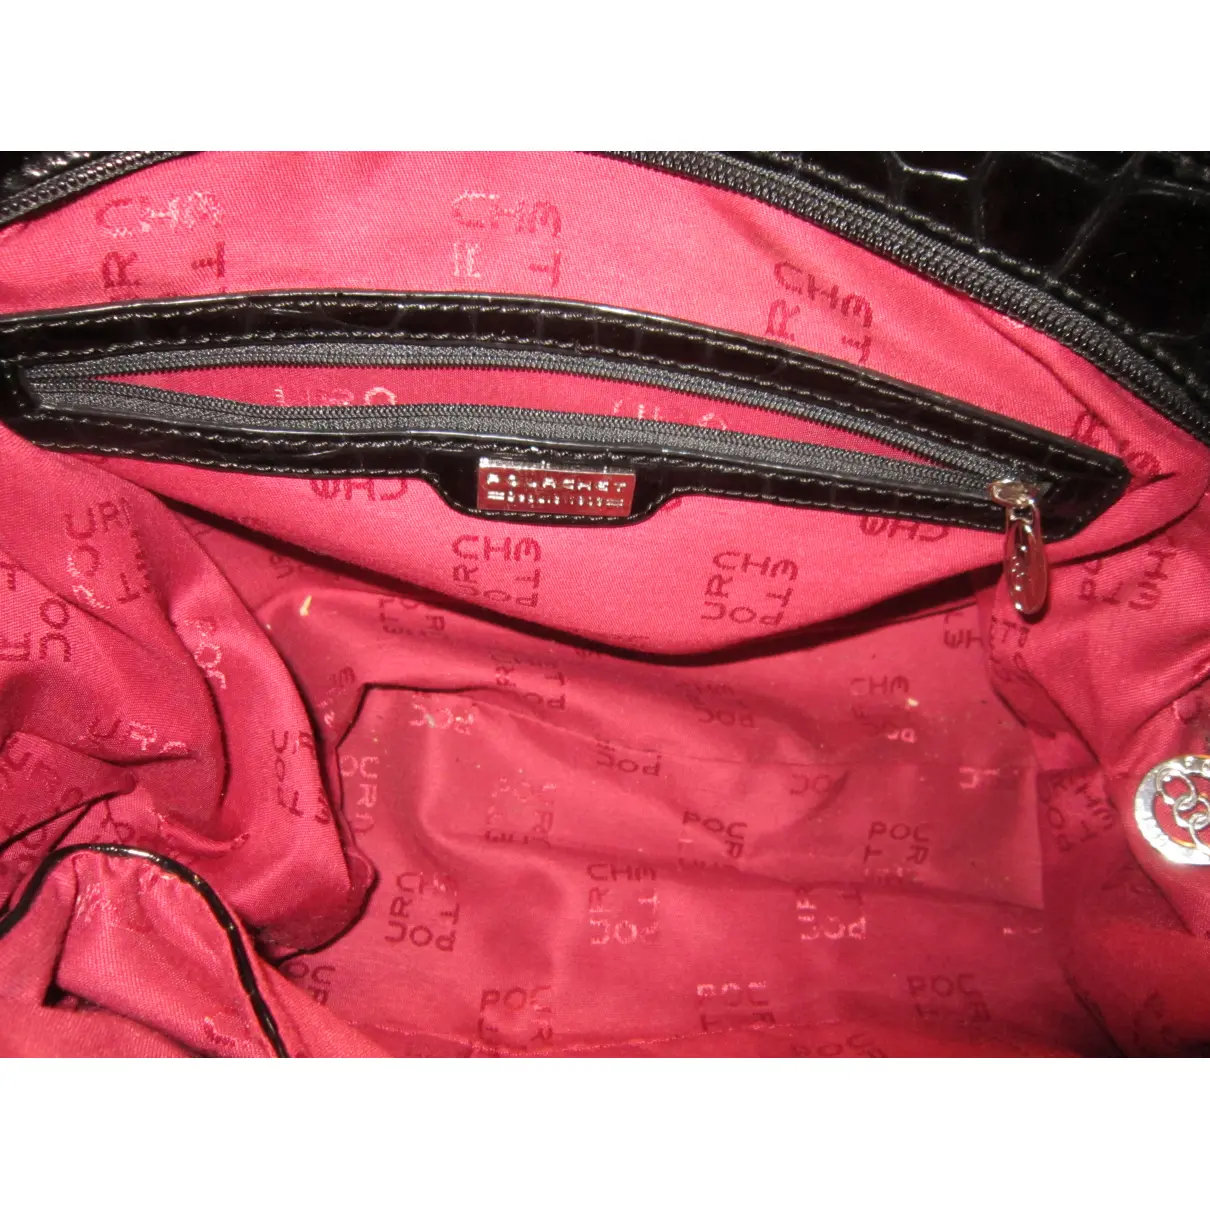 Patent leather handbag POURCHET